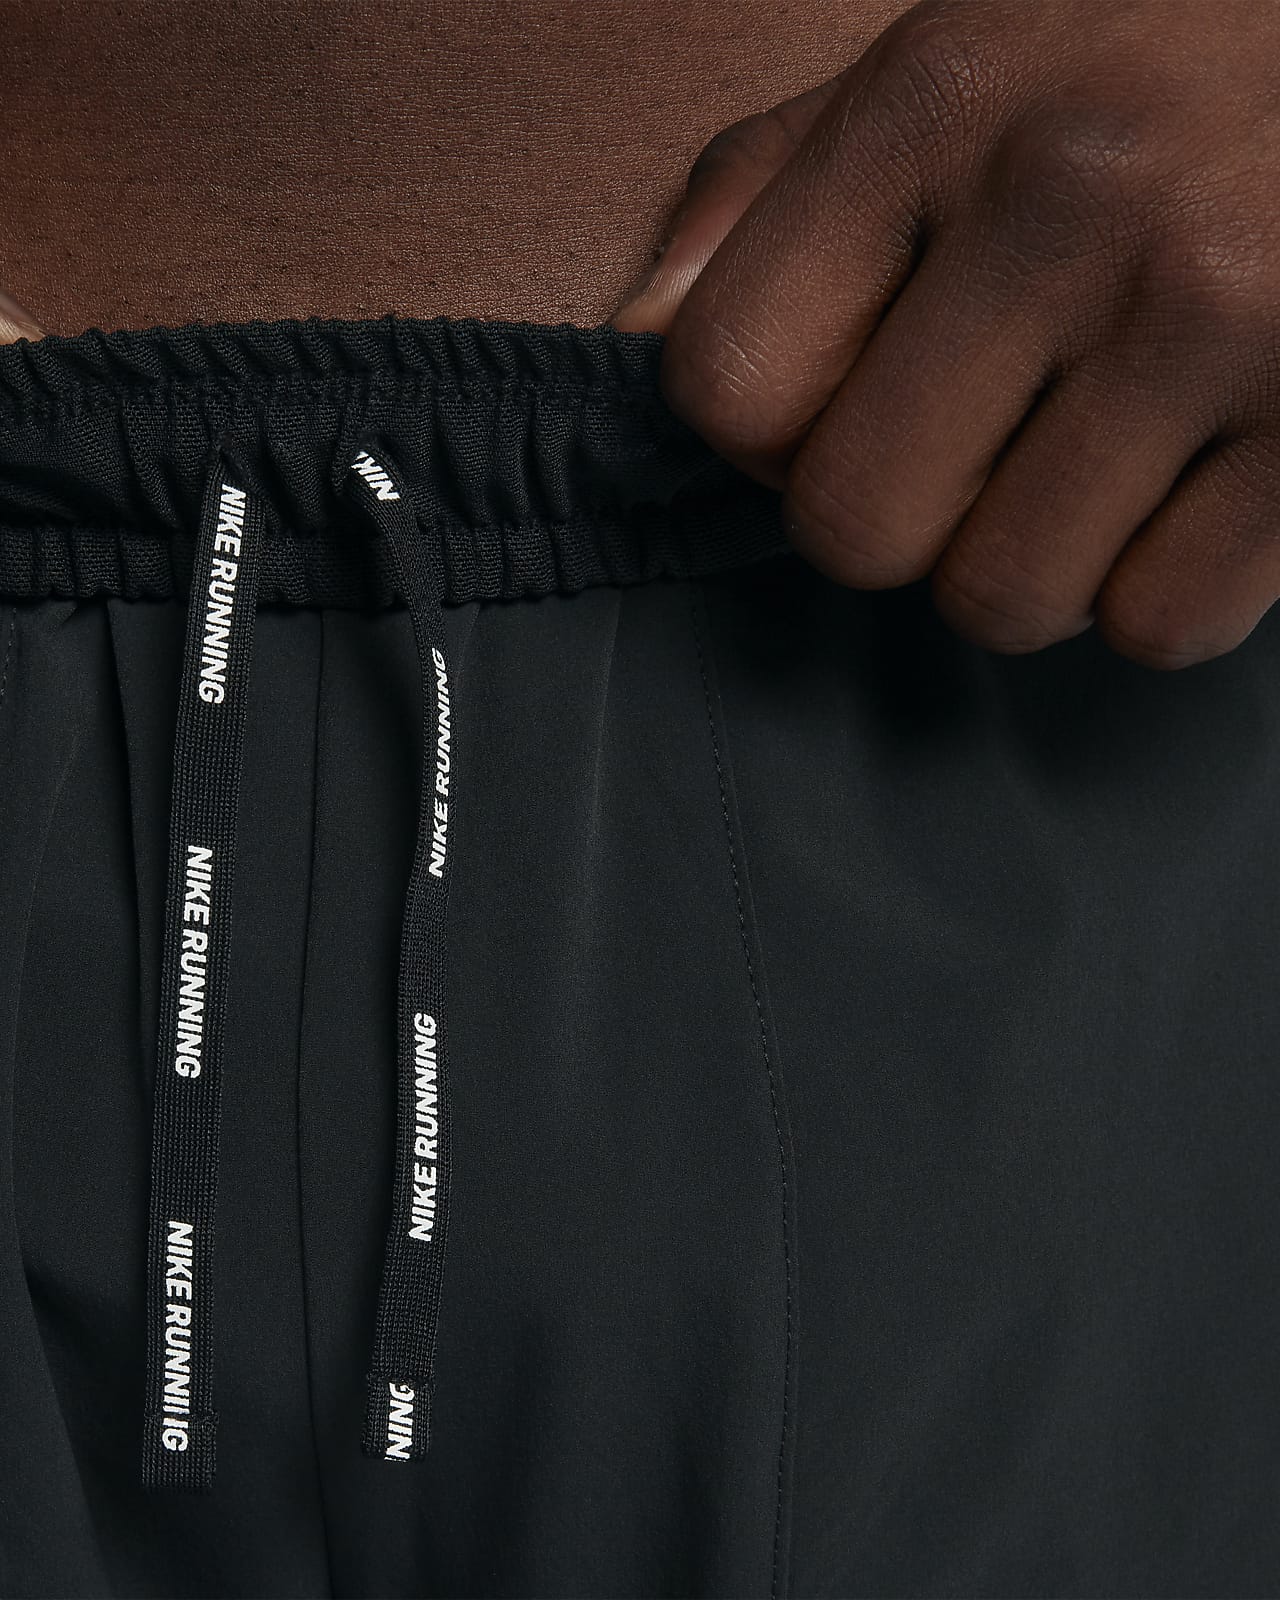 Nike Running DriFIT Phenom Elite pants in black  ASOS